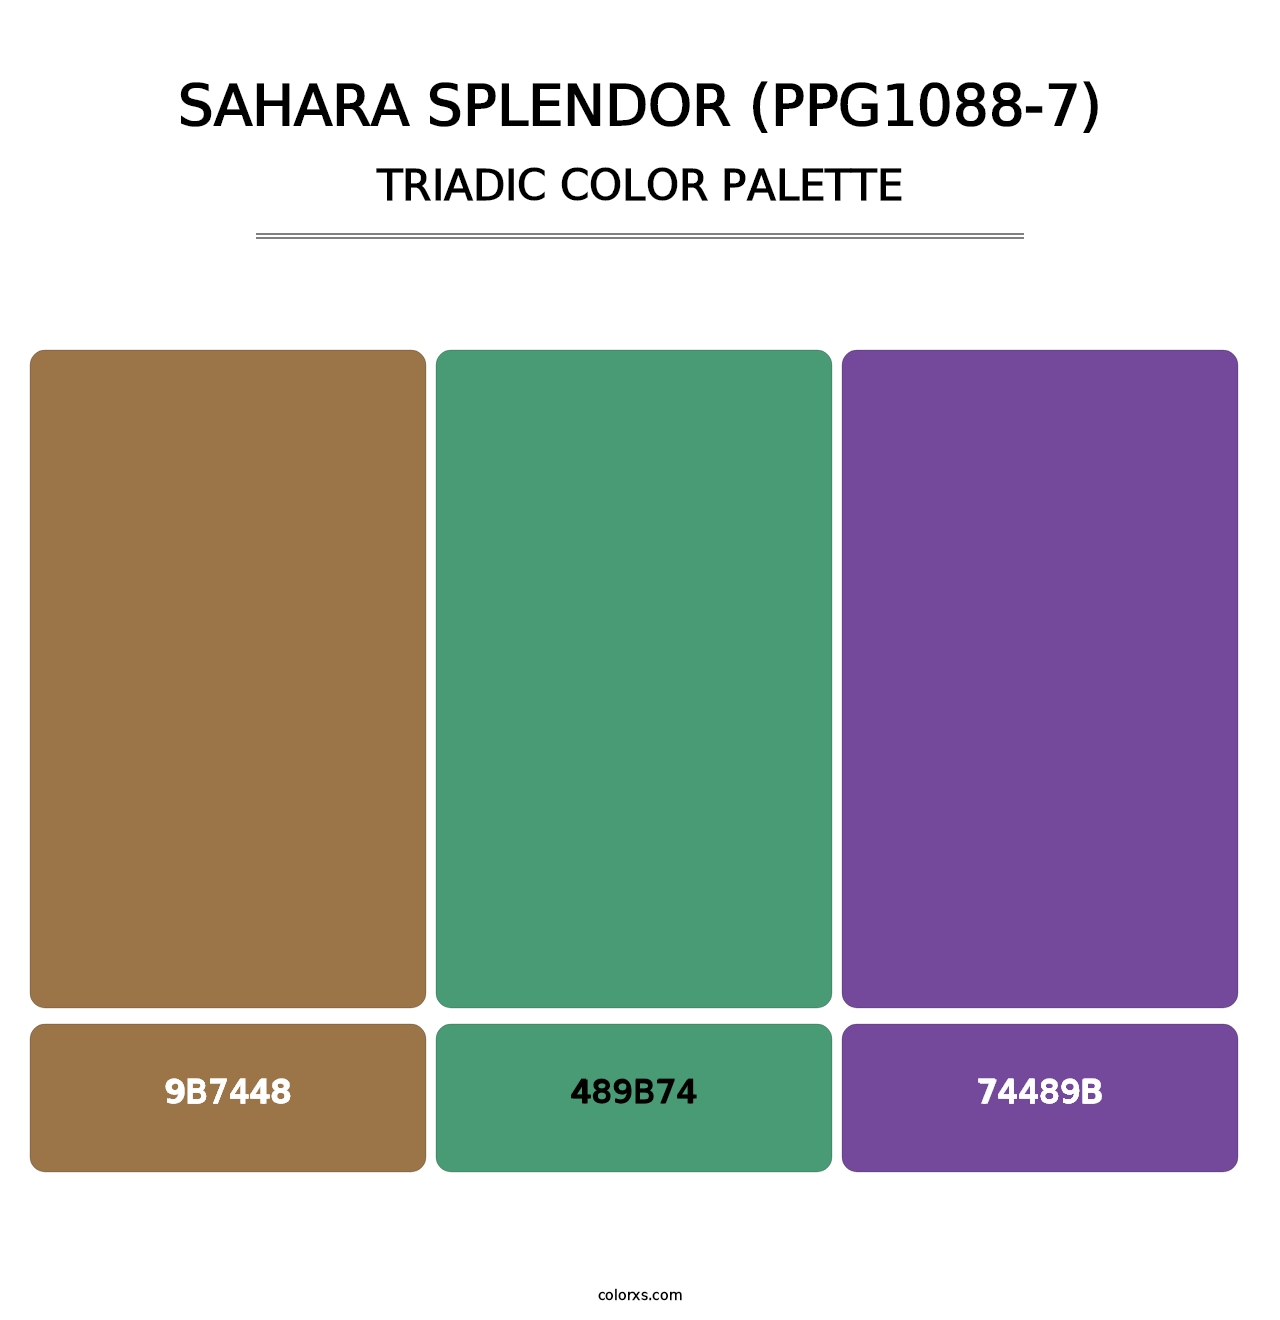 Sahara Splendor (PPG1088-7) - Triadic Color Palette